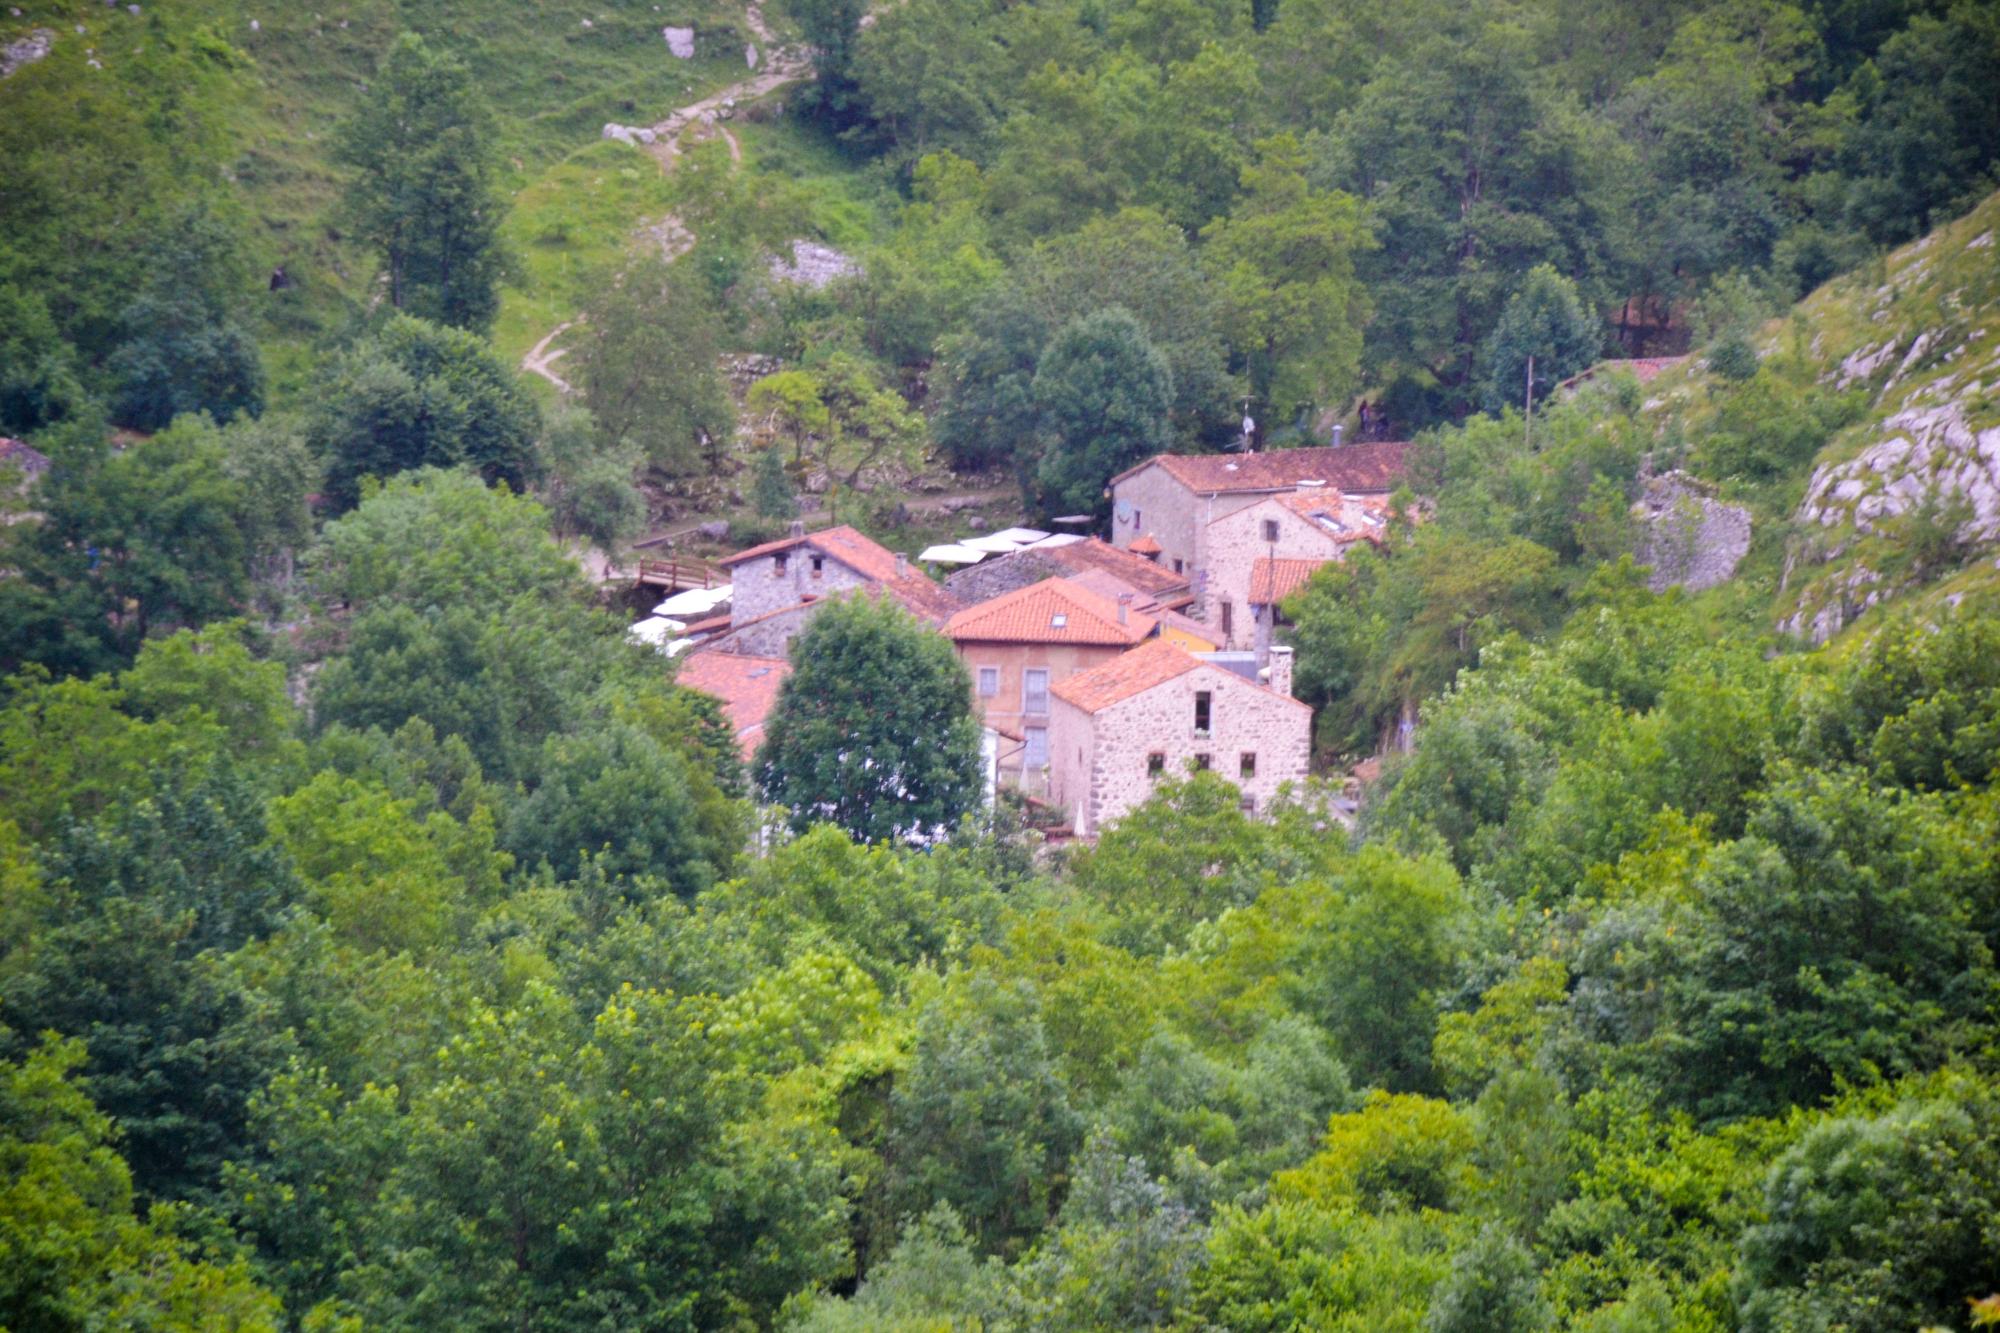 Algunas casas de Bulnes de Abajo, vistas desde una esquina del camino que sube en ascenso a la zona de arriba.